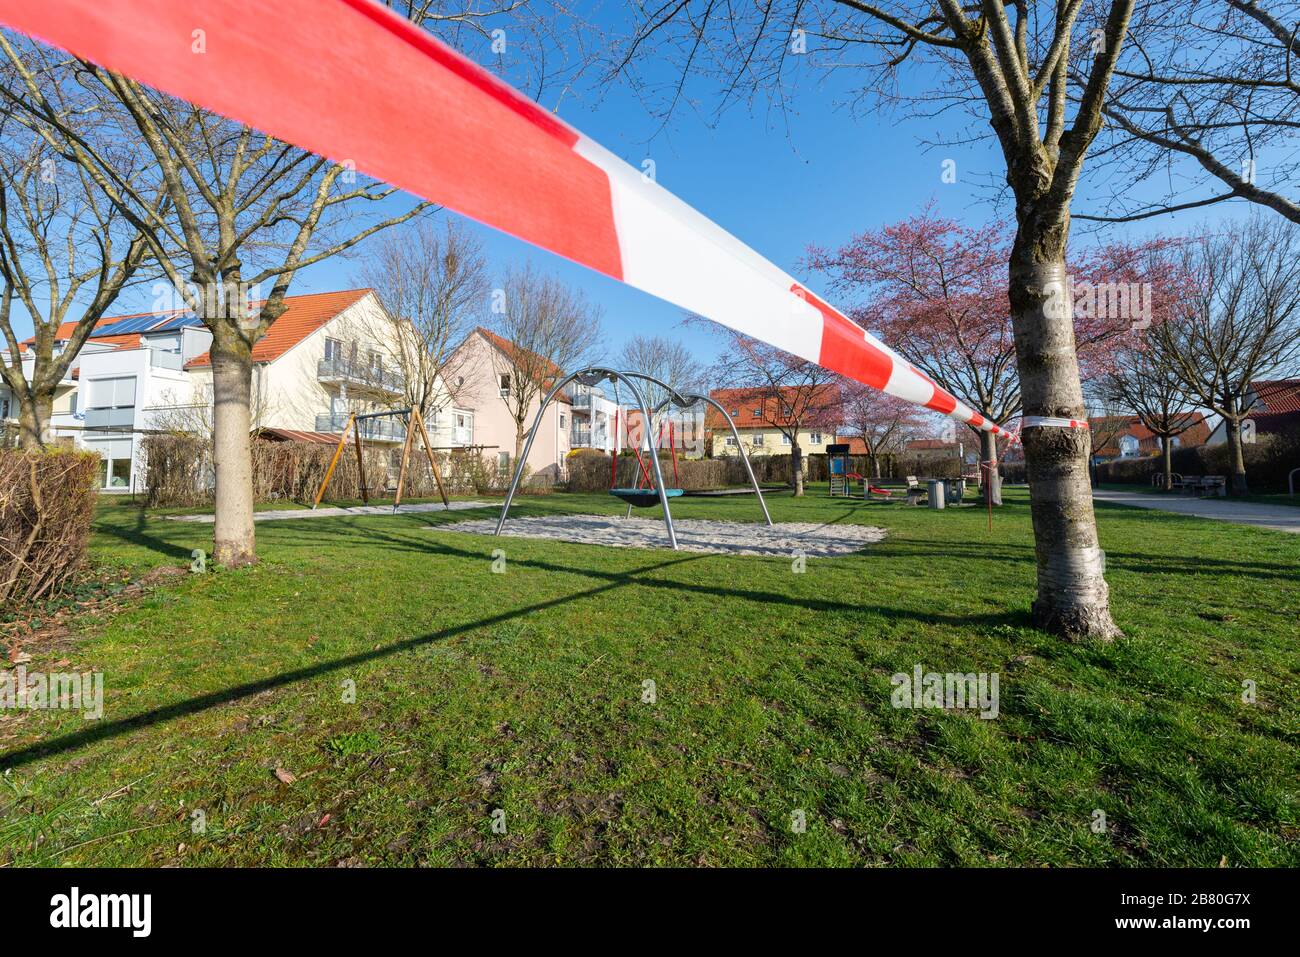 Rot-weisses Absperrband an einem gesperrten Kinderspielplatz während der Corona-Krise in Deutschland Stock Photo